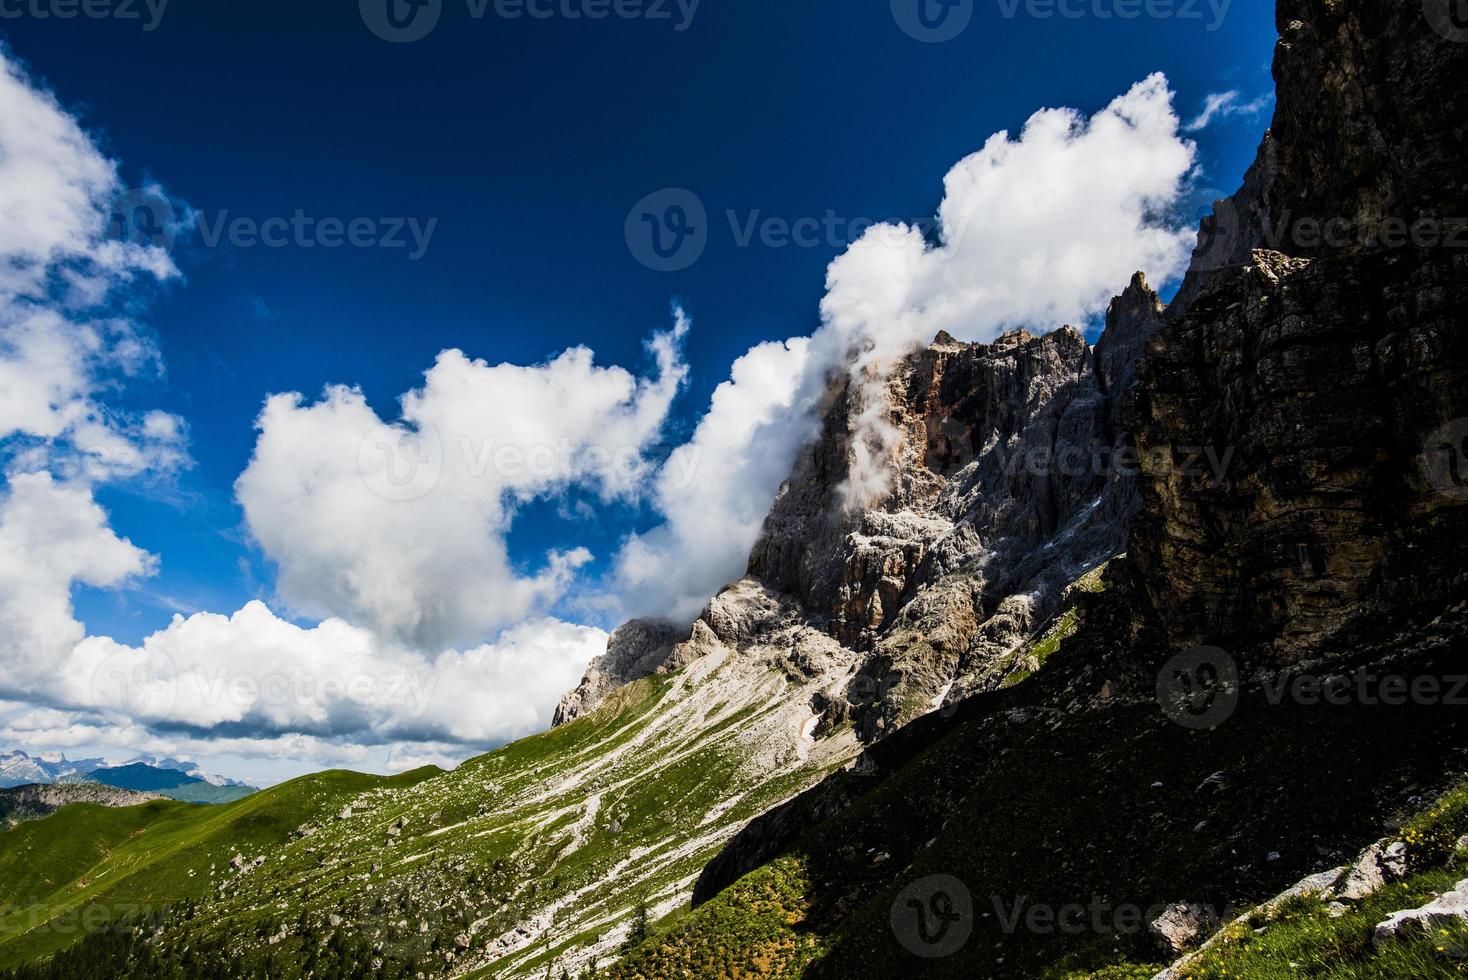 Las nubes rodean los hermosos dolomitas alrededor de San Martino di Castrozza y Passo Rolle, Trento, Italia foto